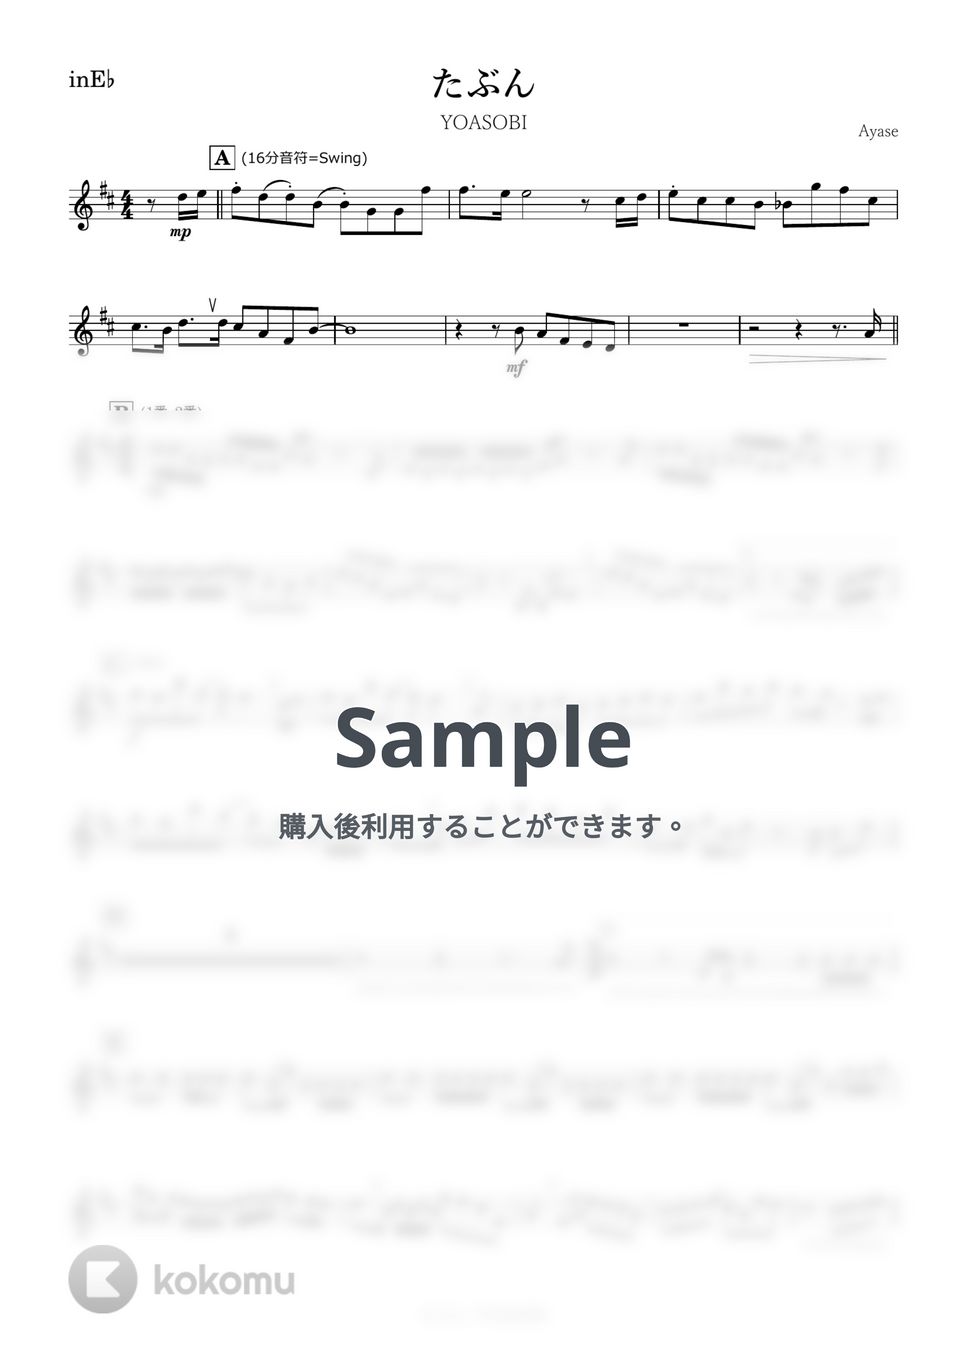 YOASOBI - たぶん (E♭) by kanamusic